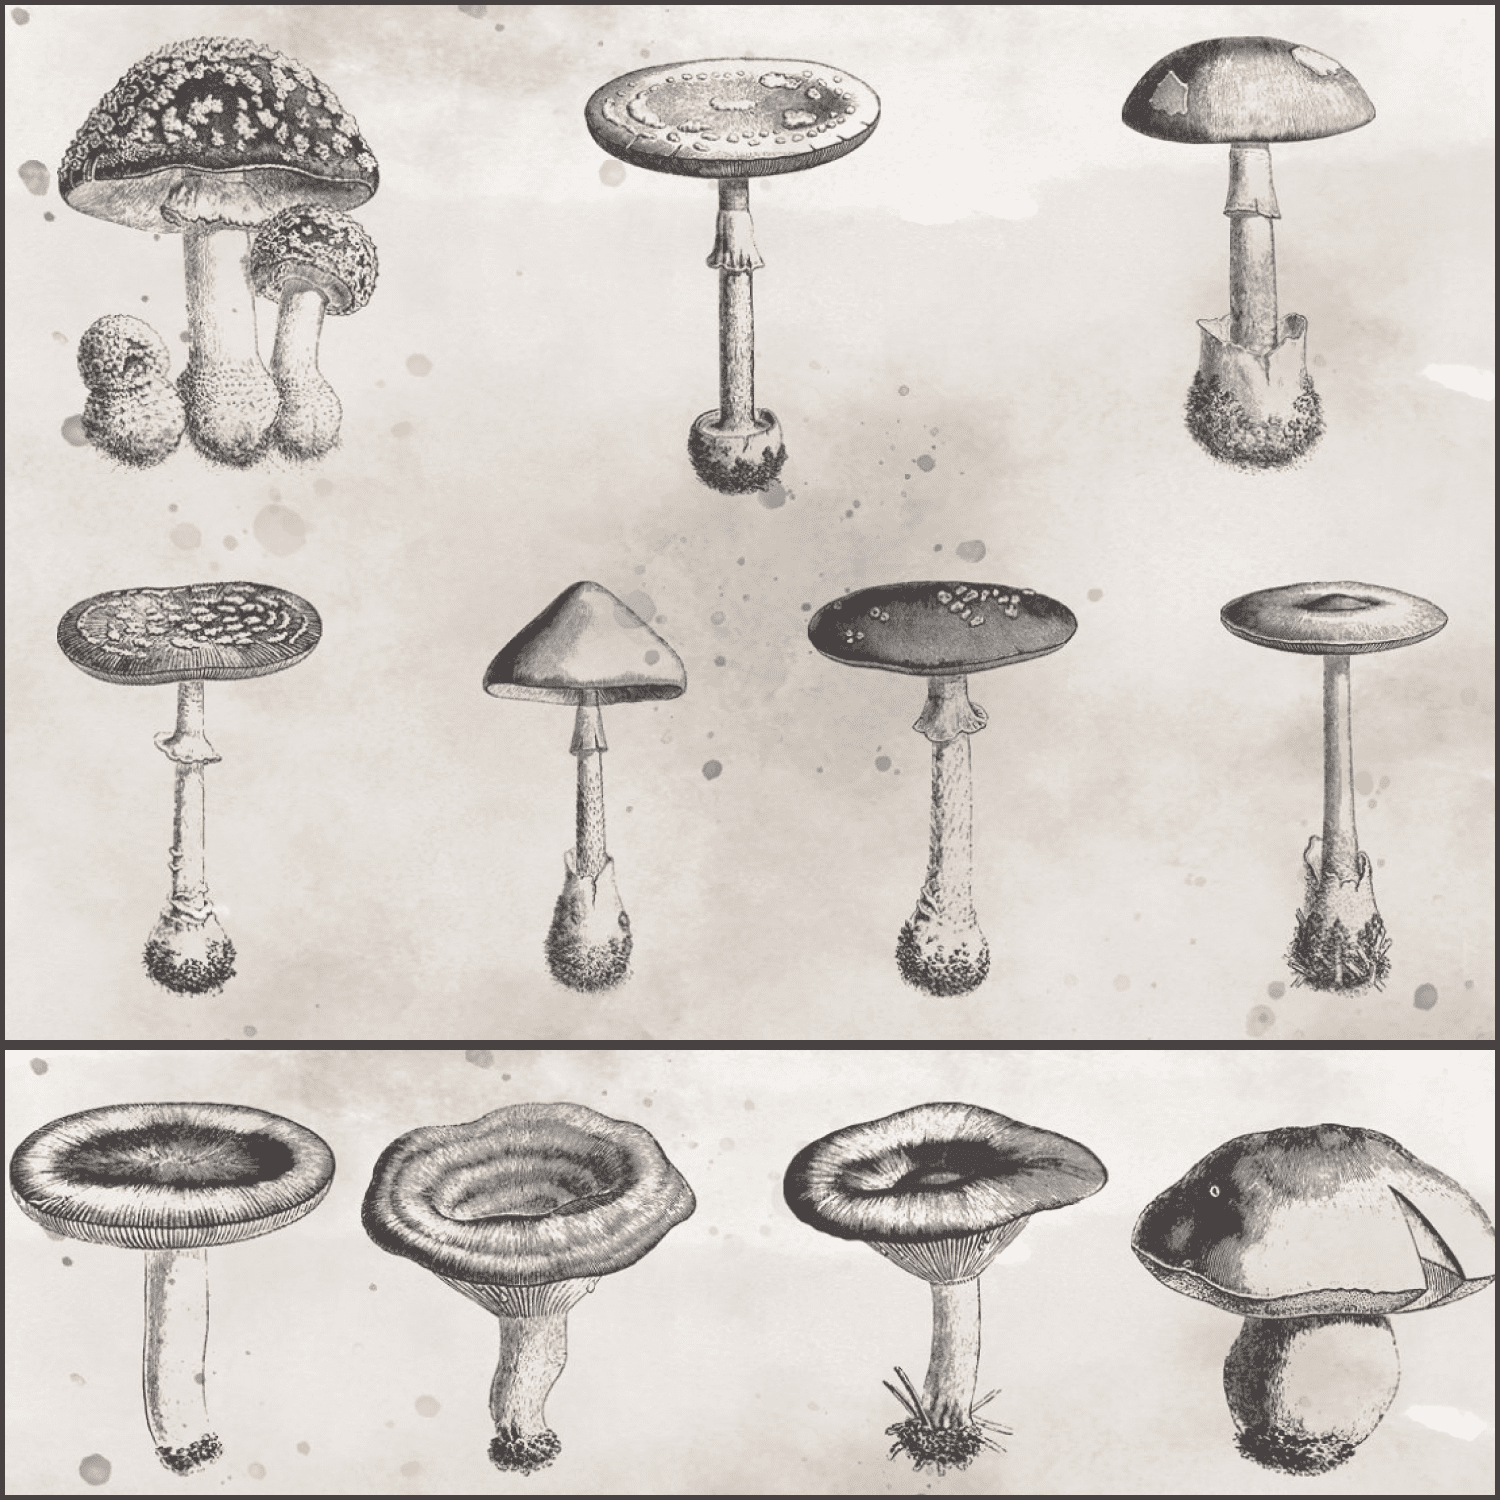 Vintage vectorized mushroom clipart created byThirdTryCharm.